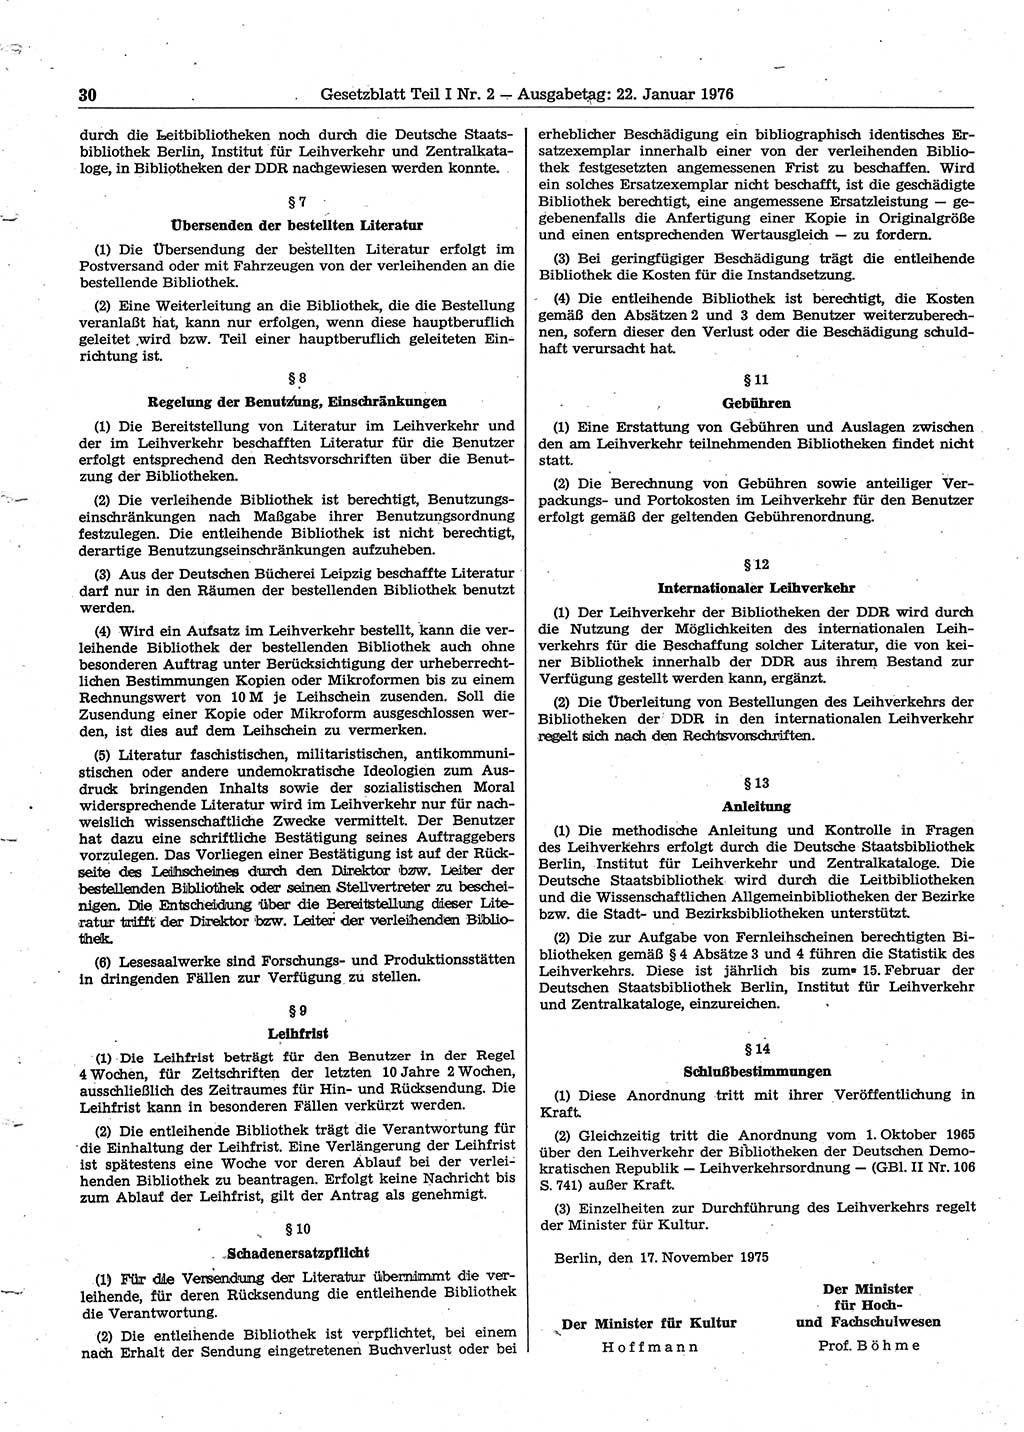 Gesetzblatt (GBl.) der Deutschen Demokratischen Republik (DDR) Teil Ⅰ 1976, Seite 30 (GBl. DDR Ⅰ 1976, S. 30)